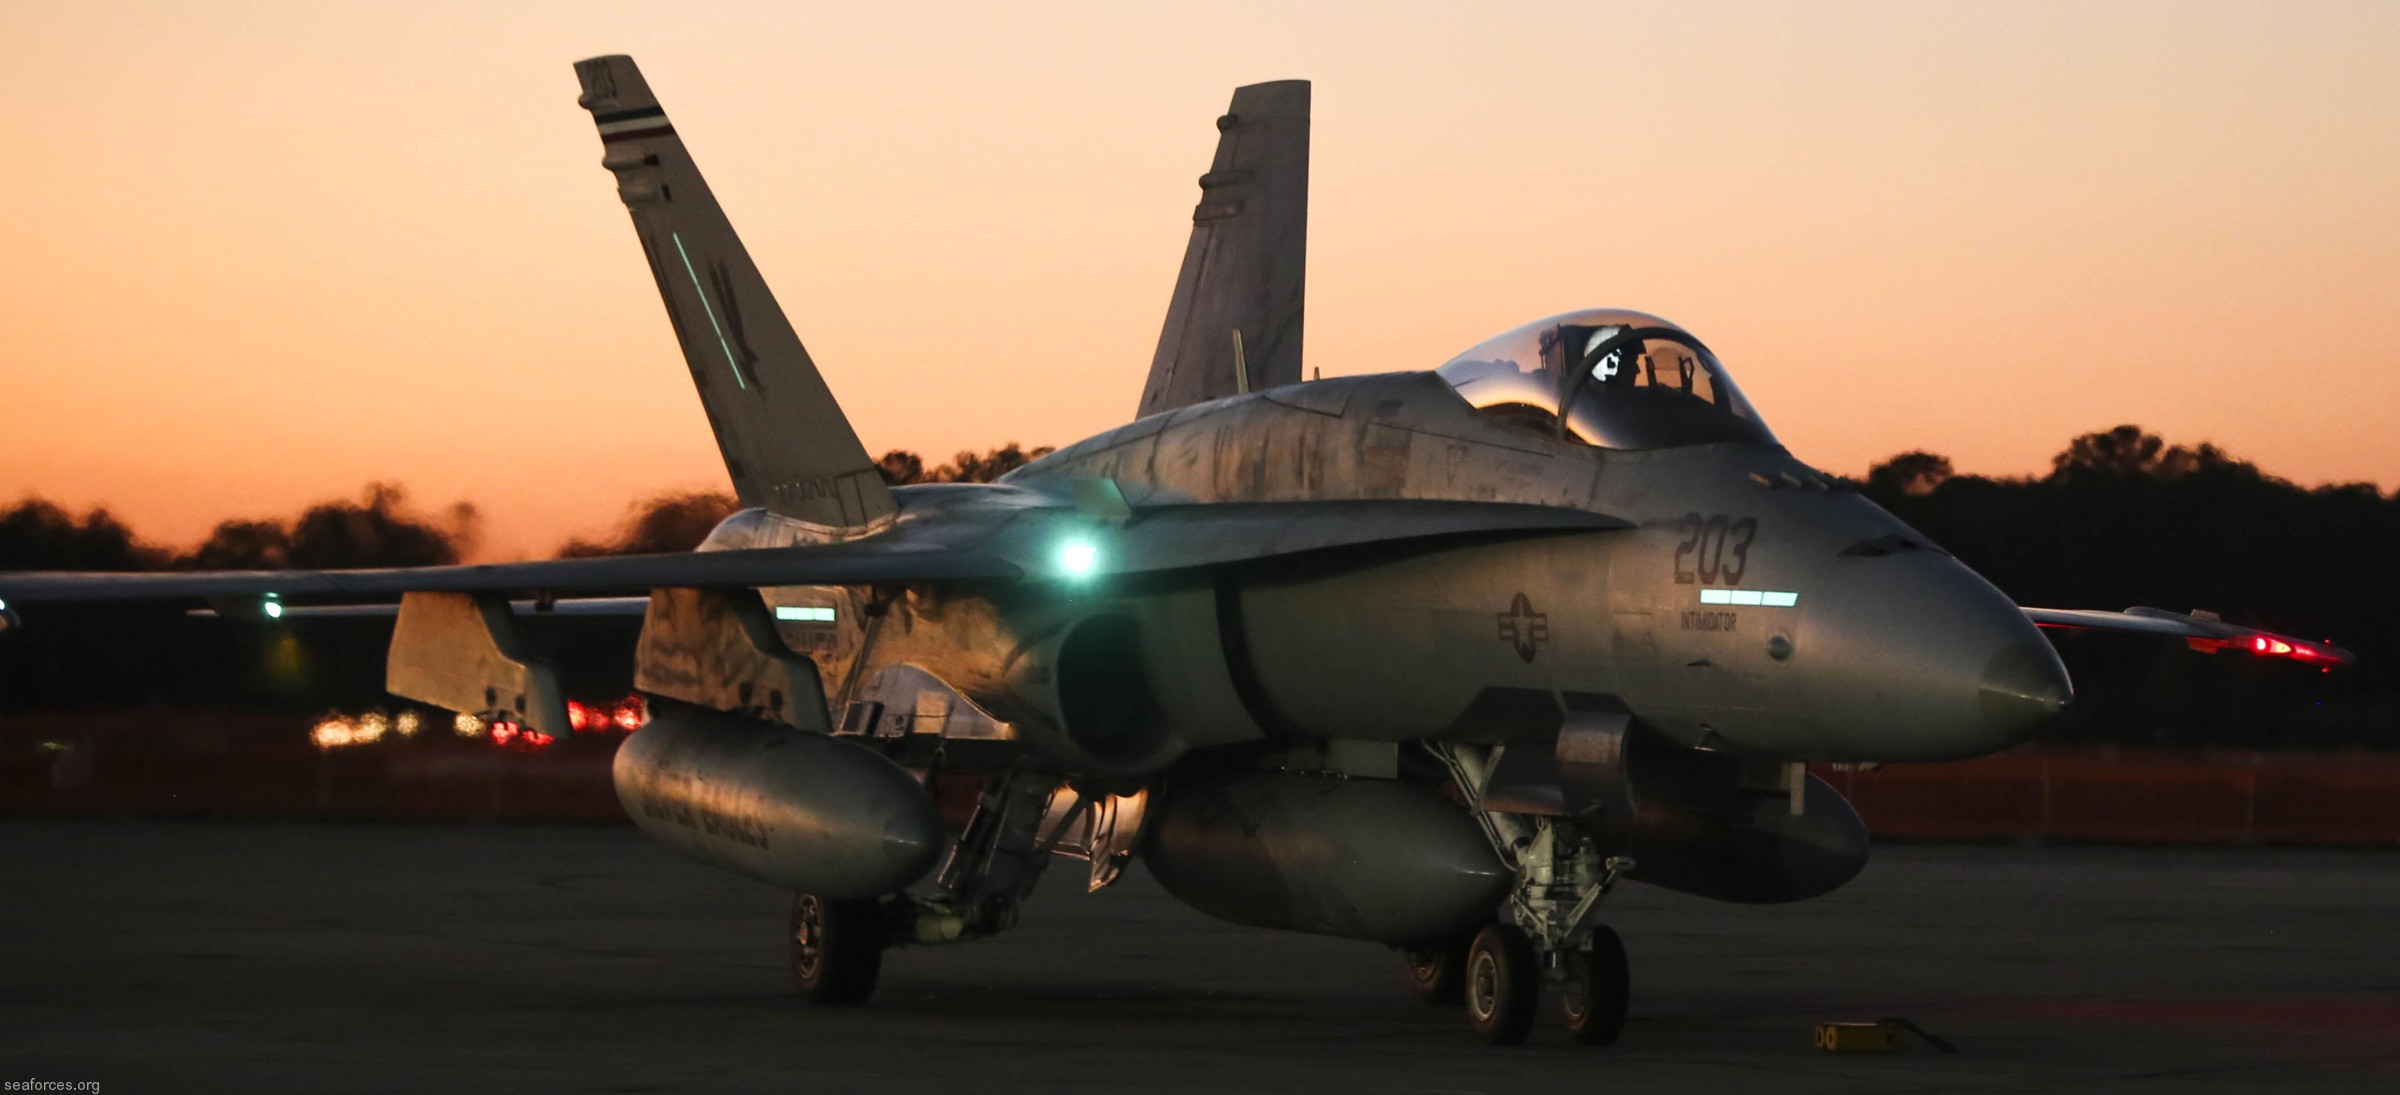 vmfa-115 silver eagles marine fighter attack squadron f/a-18a+ hornet 126